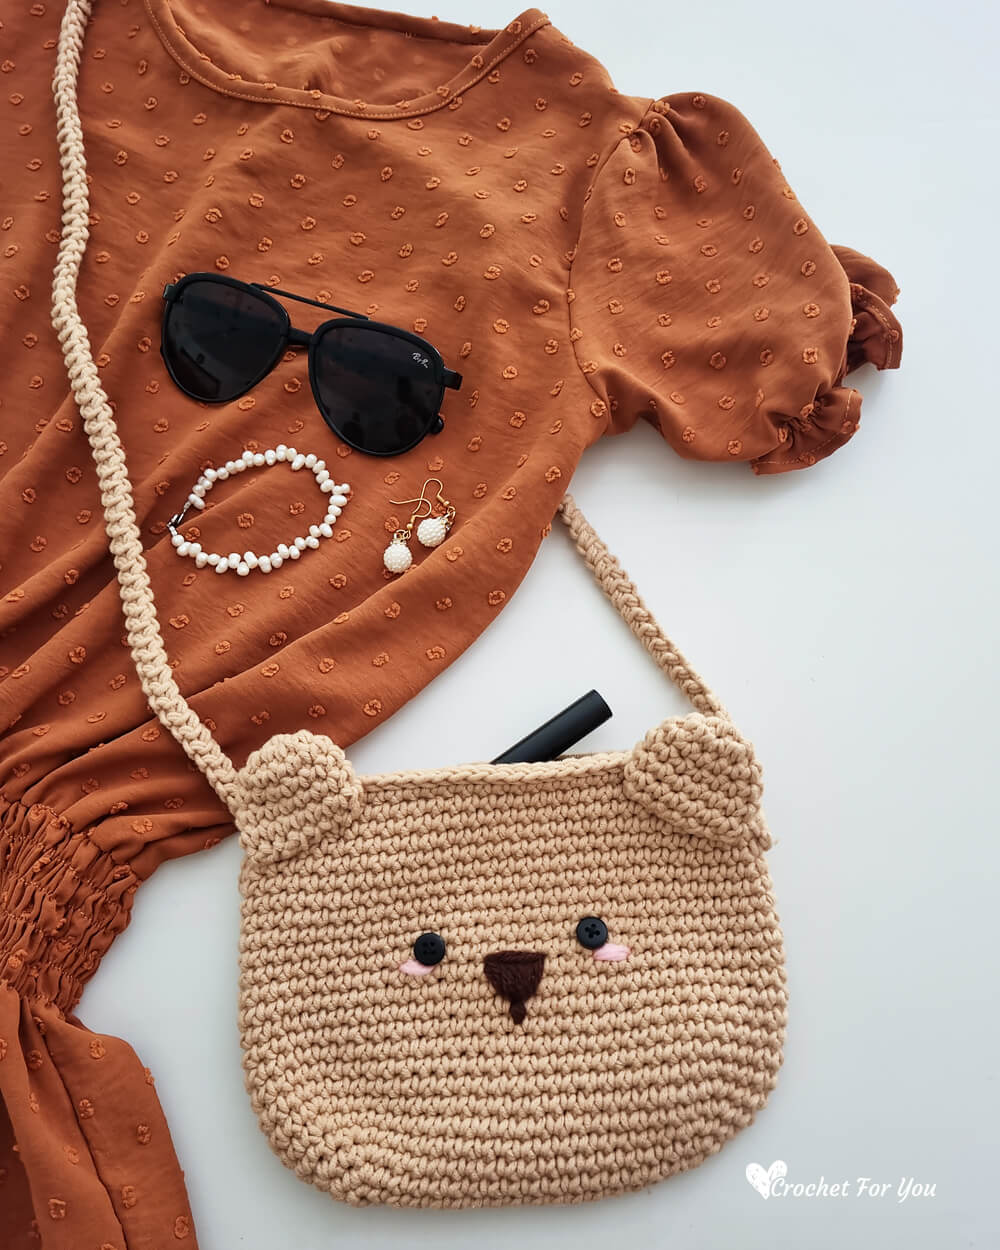 Buy Crochet Pattern, Sheep Crochet Handbag, Crochet Bag, Crochet Purse,  Sheep Bag, Shoulder Bag Online in India - Etsy